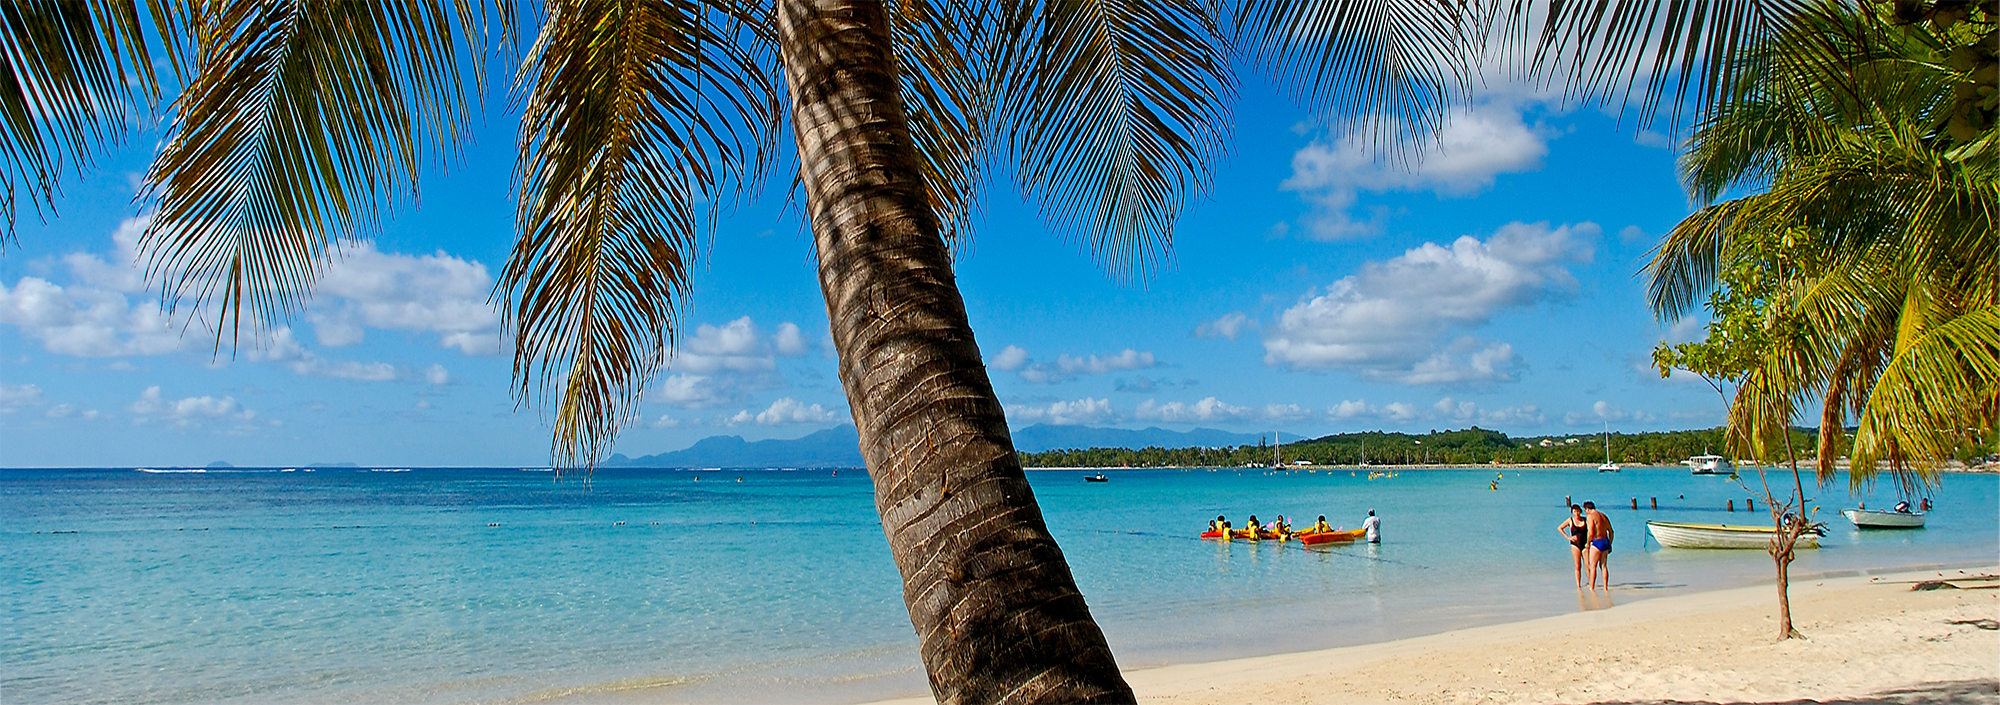 Weißer Sandstrand mit Palmen von Sainte Anne auf Grande-Terre, Guadeloupe